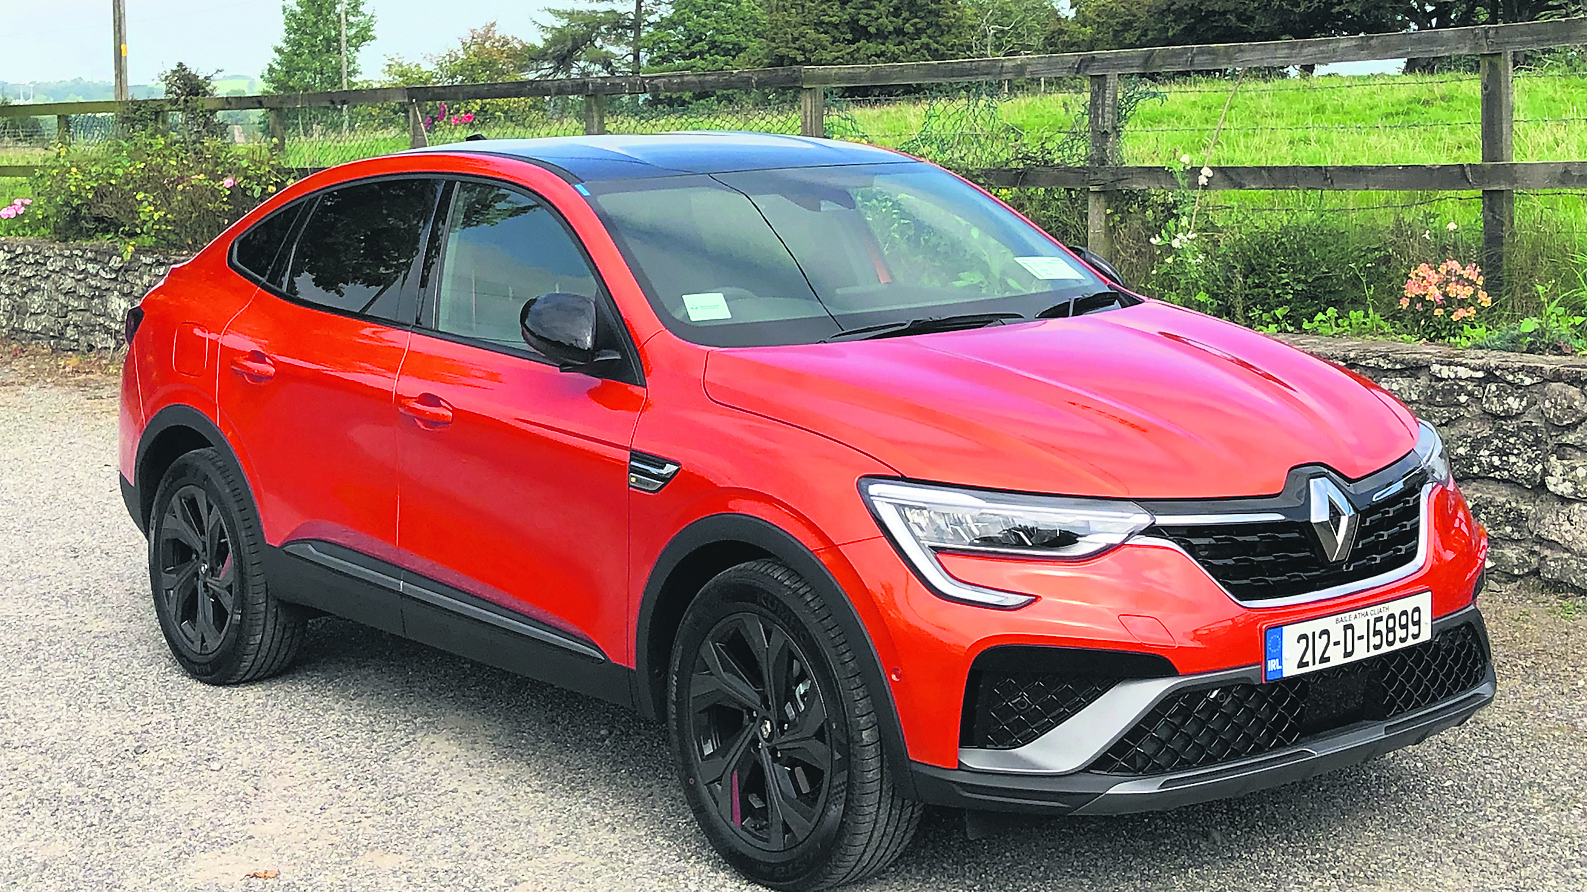 Renault Arkana (2021) review: a trend follower